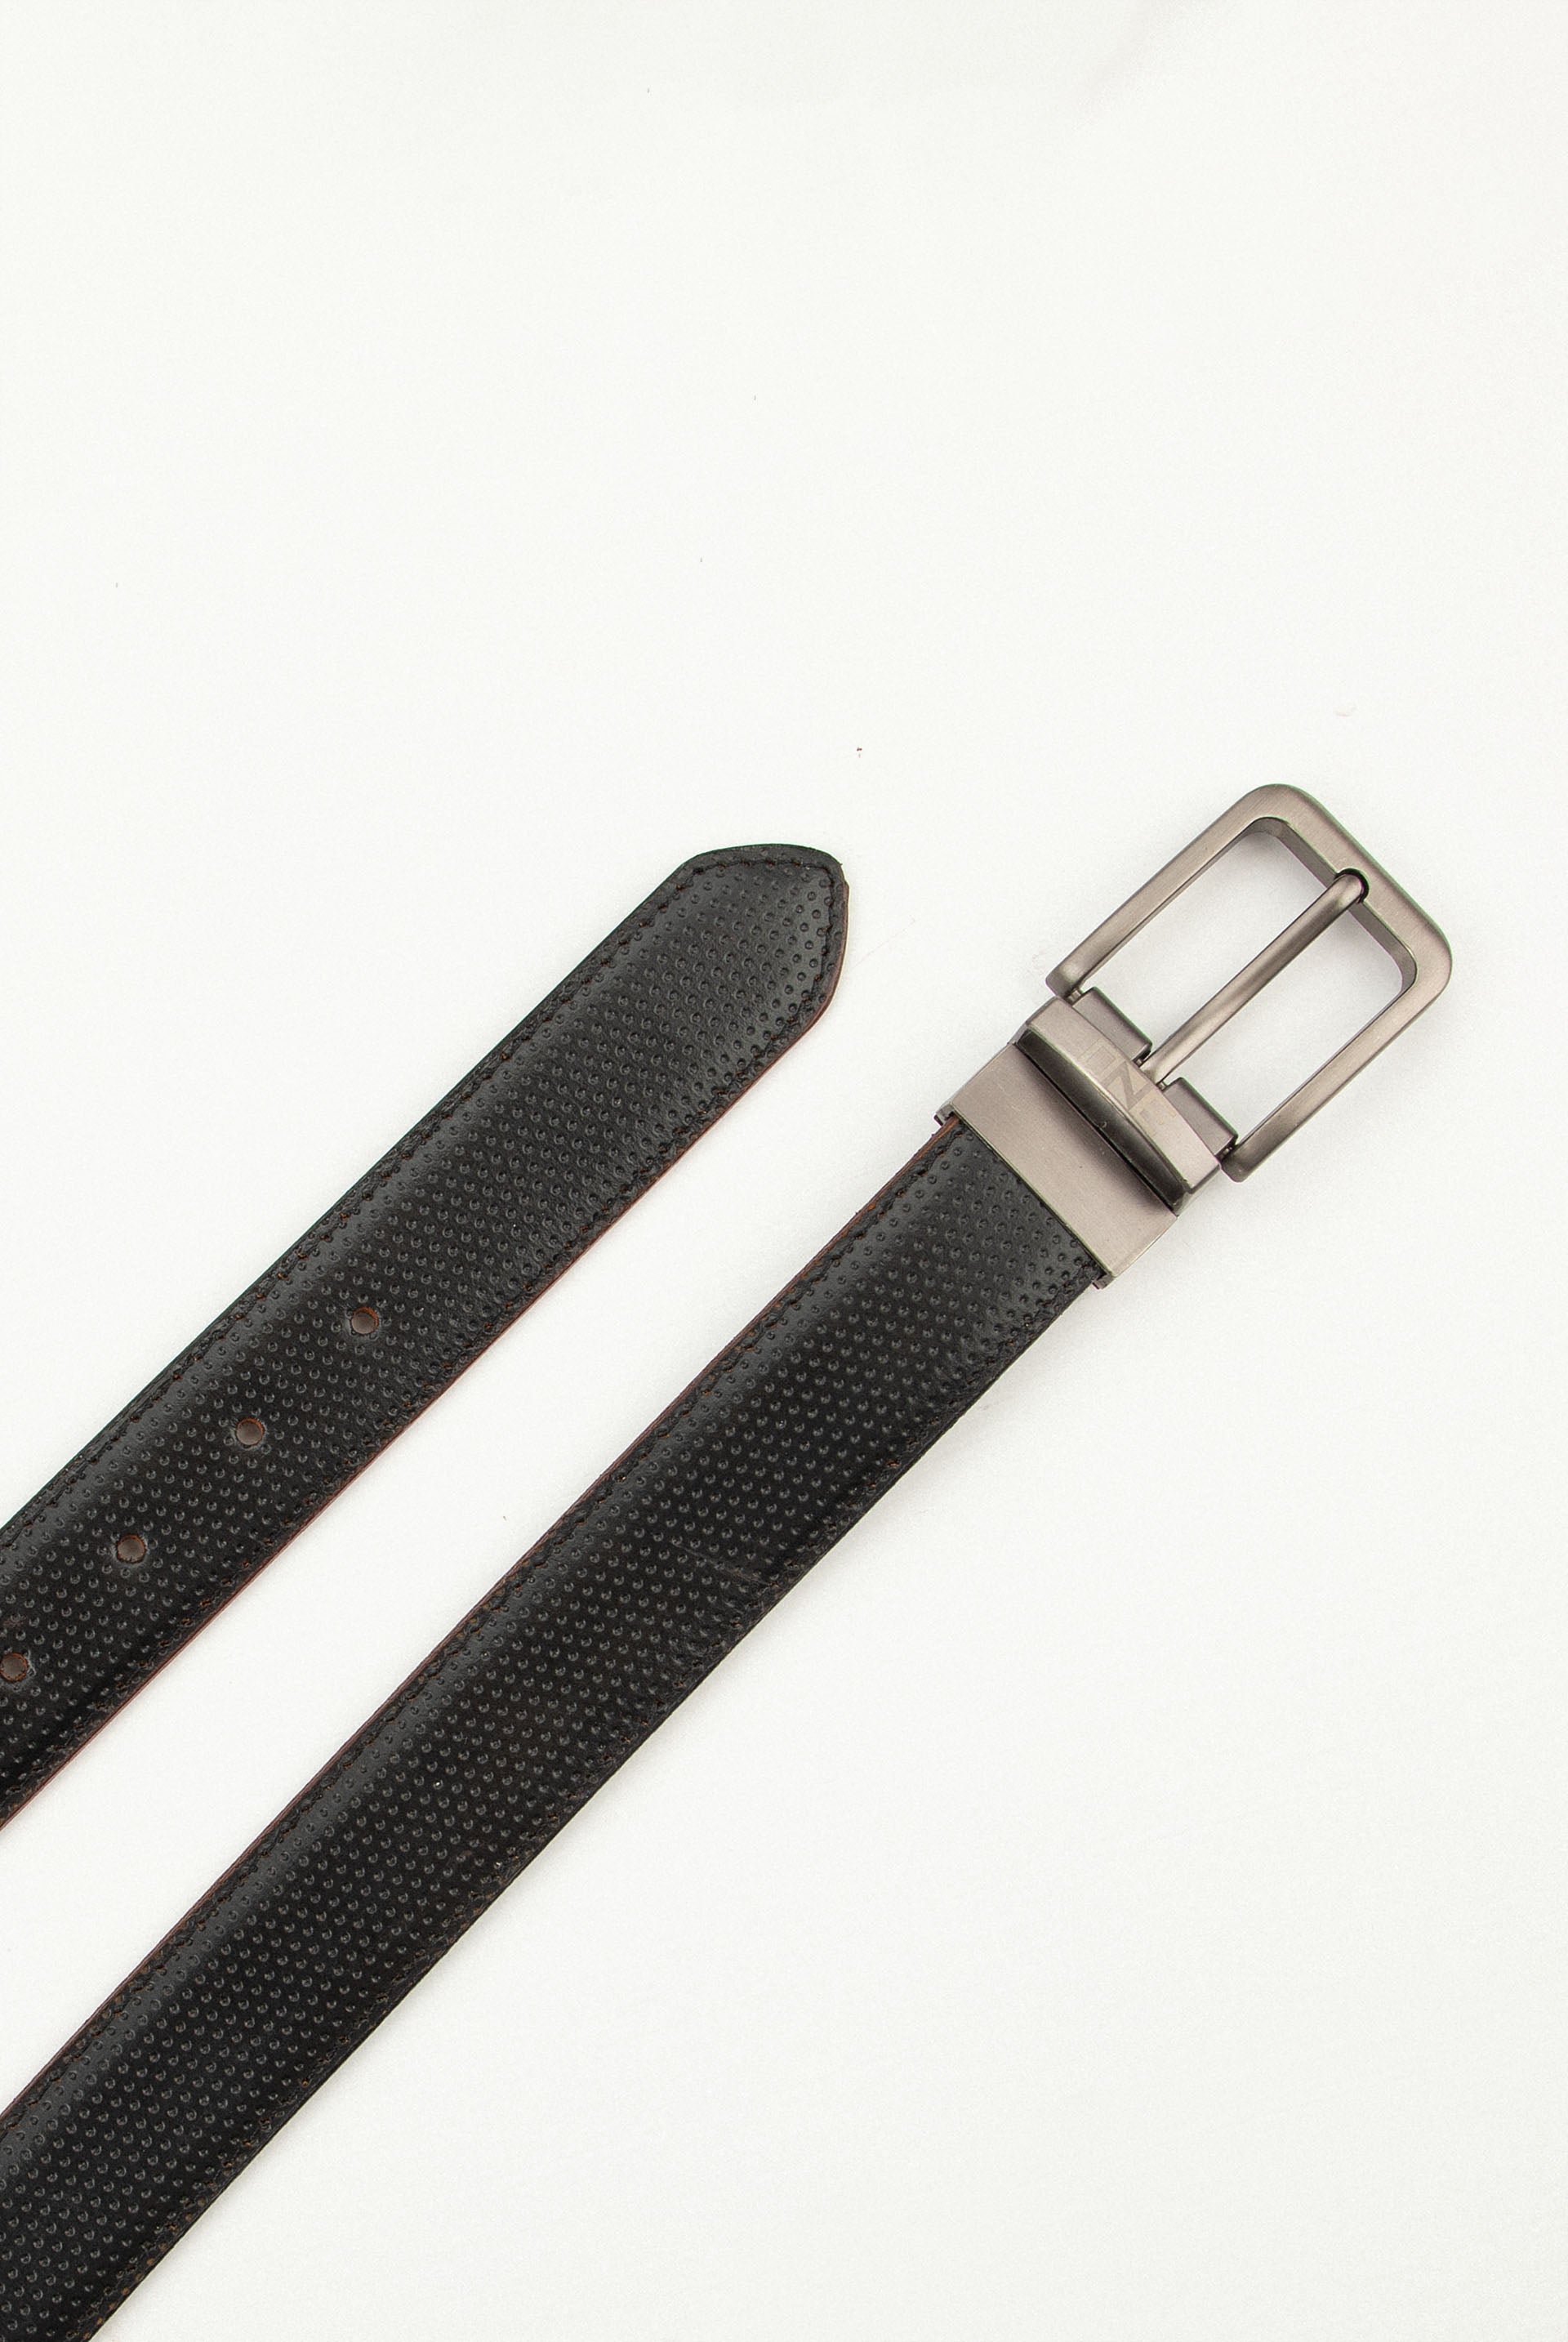 Double Textured Belt Black/Brown